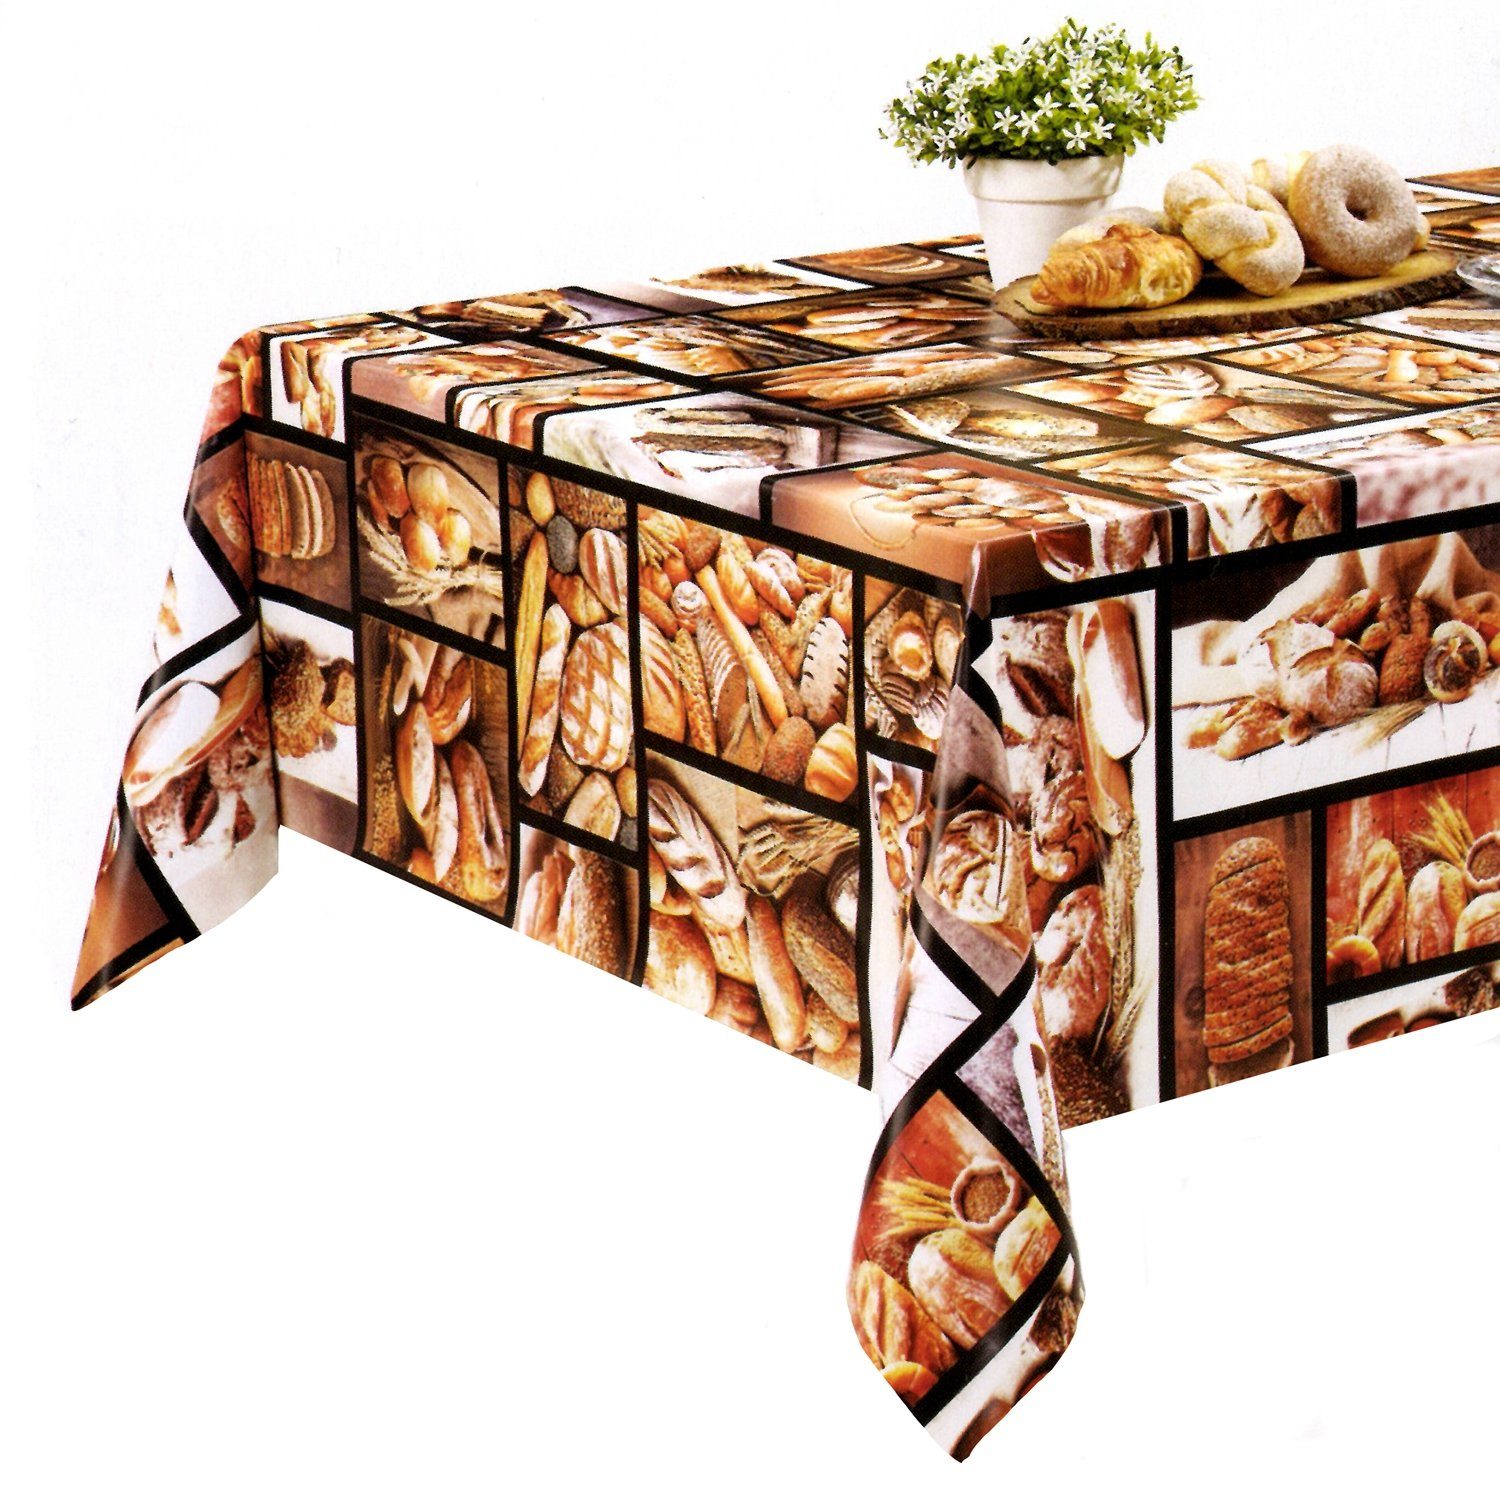 Fiora Gartentischdecke Tischdecke Brot-Brötchen Plastik, Motiv Wachstuchdecke Abwaschbar PVC Abwischbar